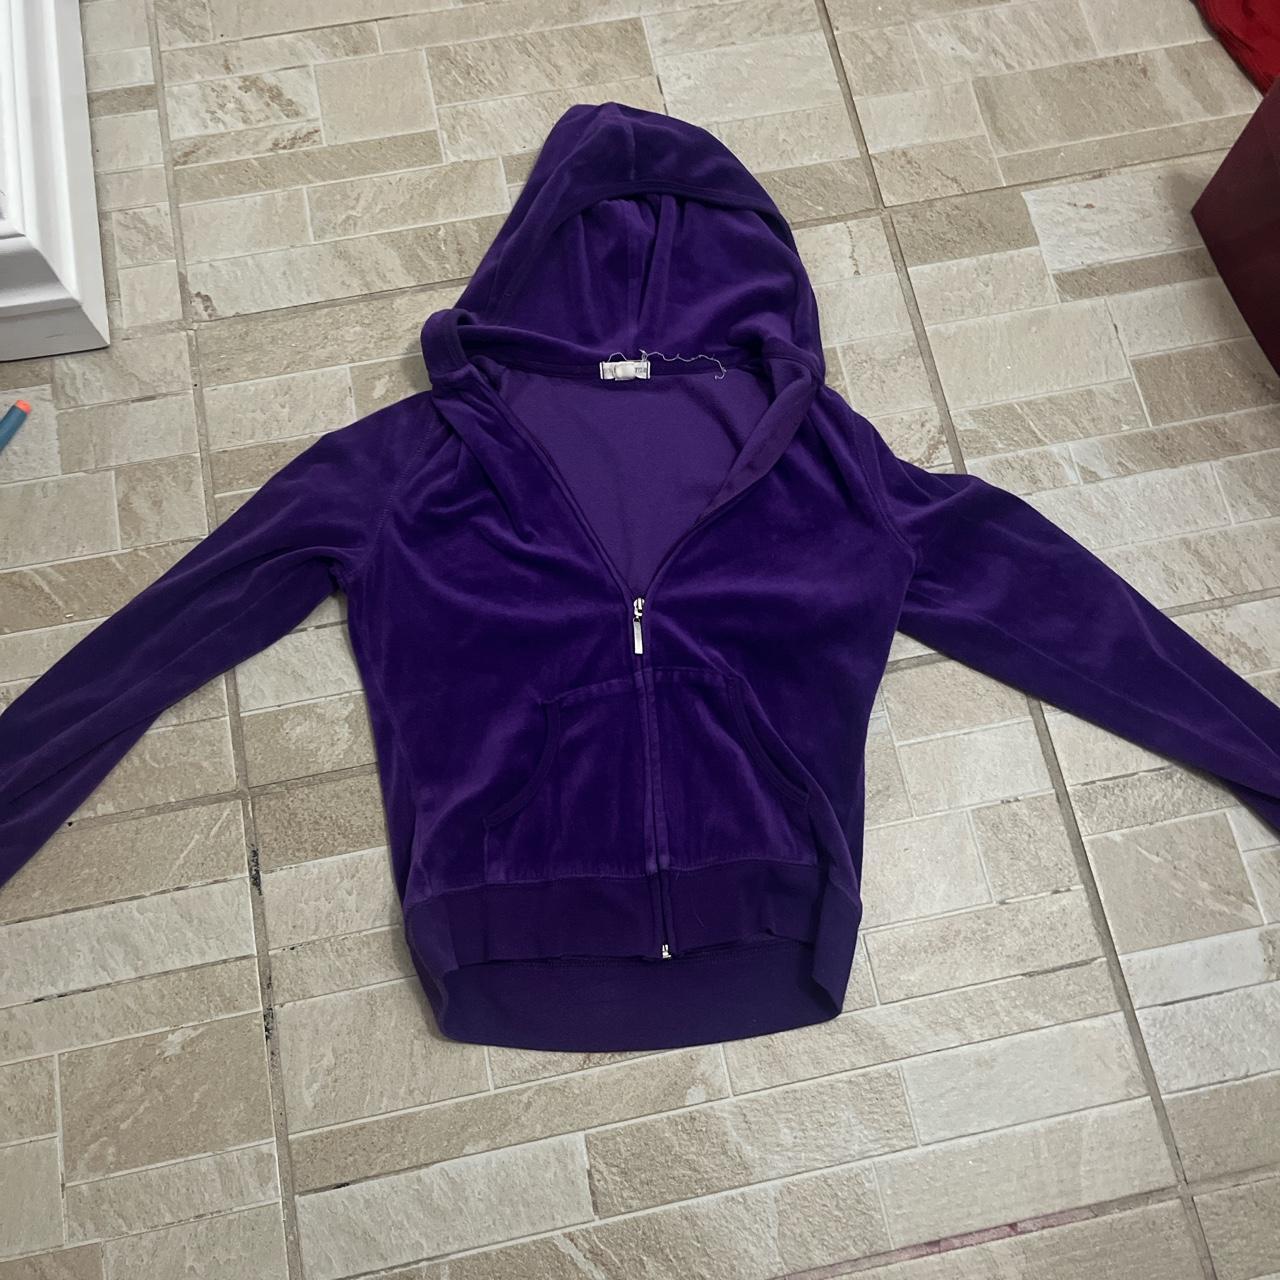 purple y2k velour tracksuit sweater/hoodie! tag says... - Depop